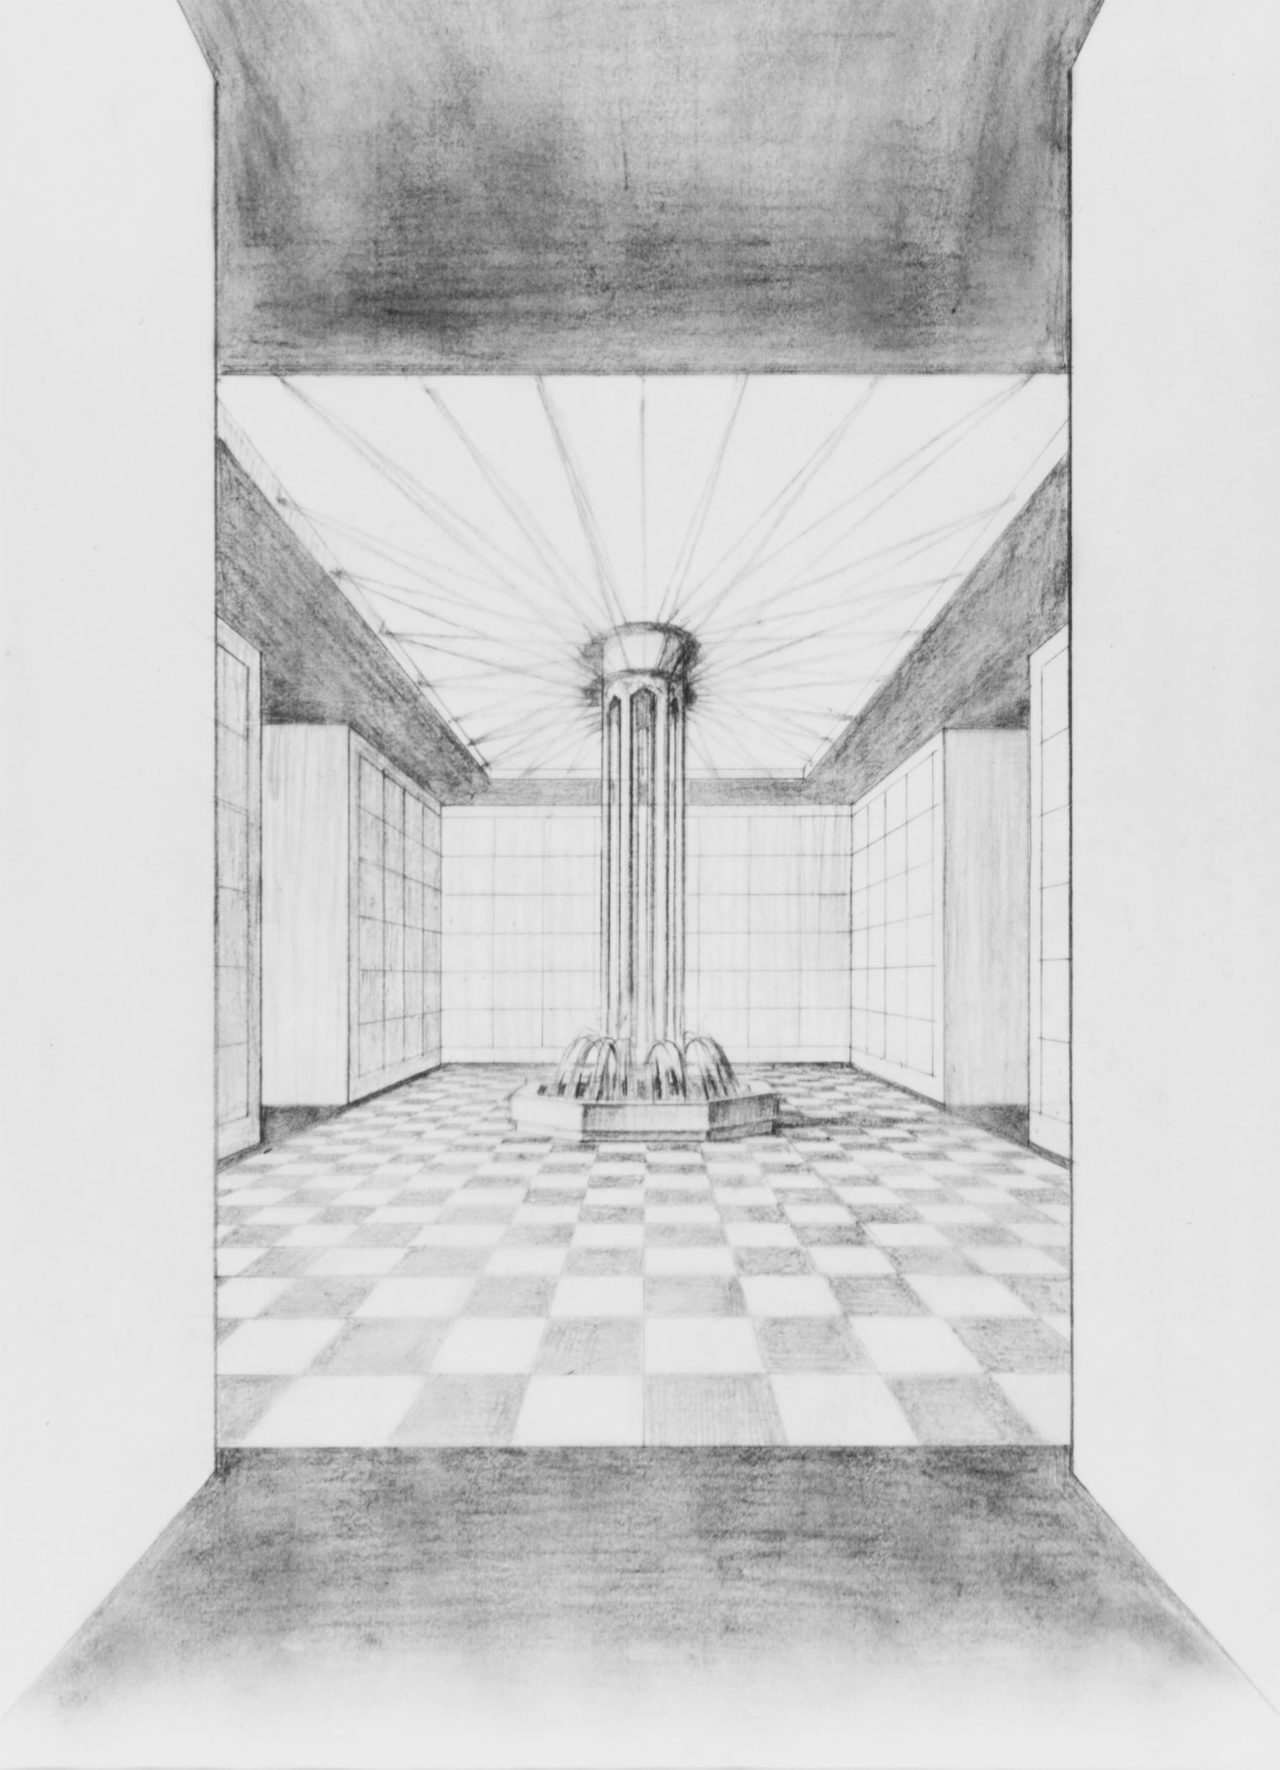 Sketch for interior of mausoleum complex.